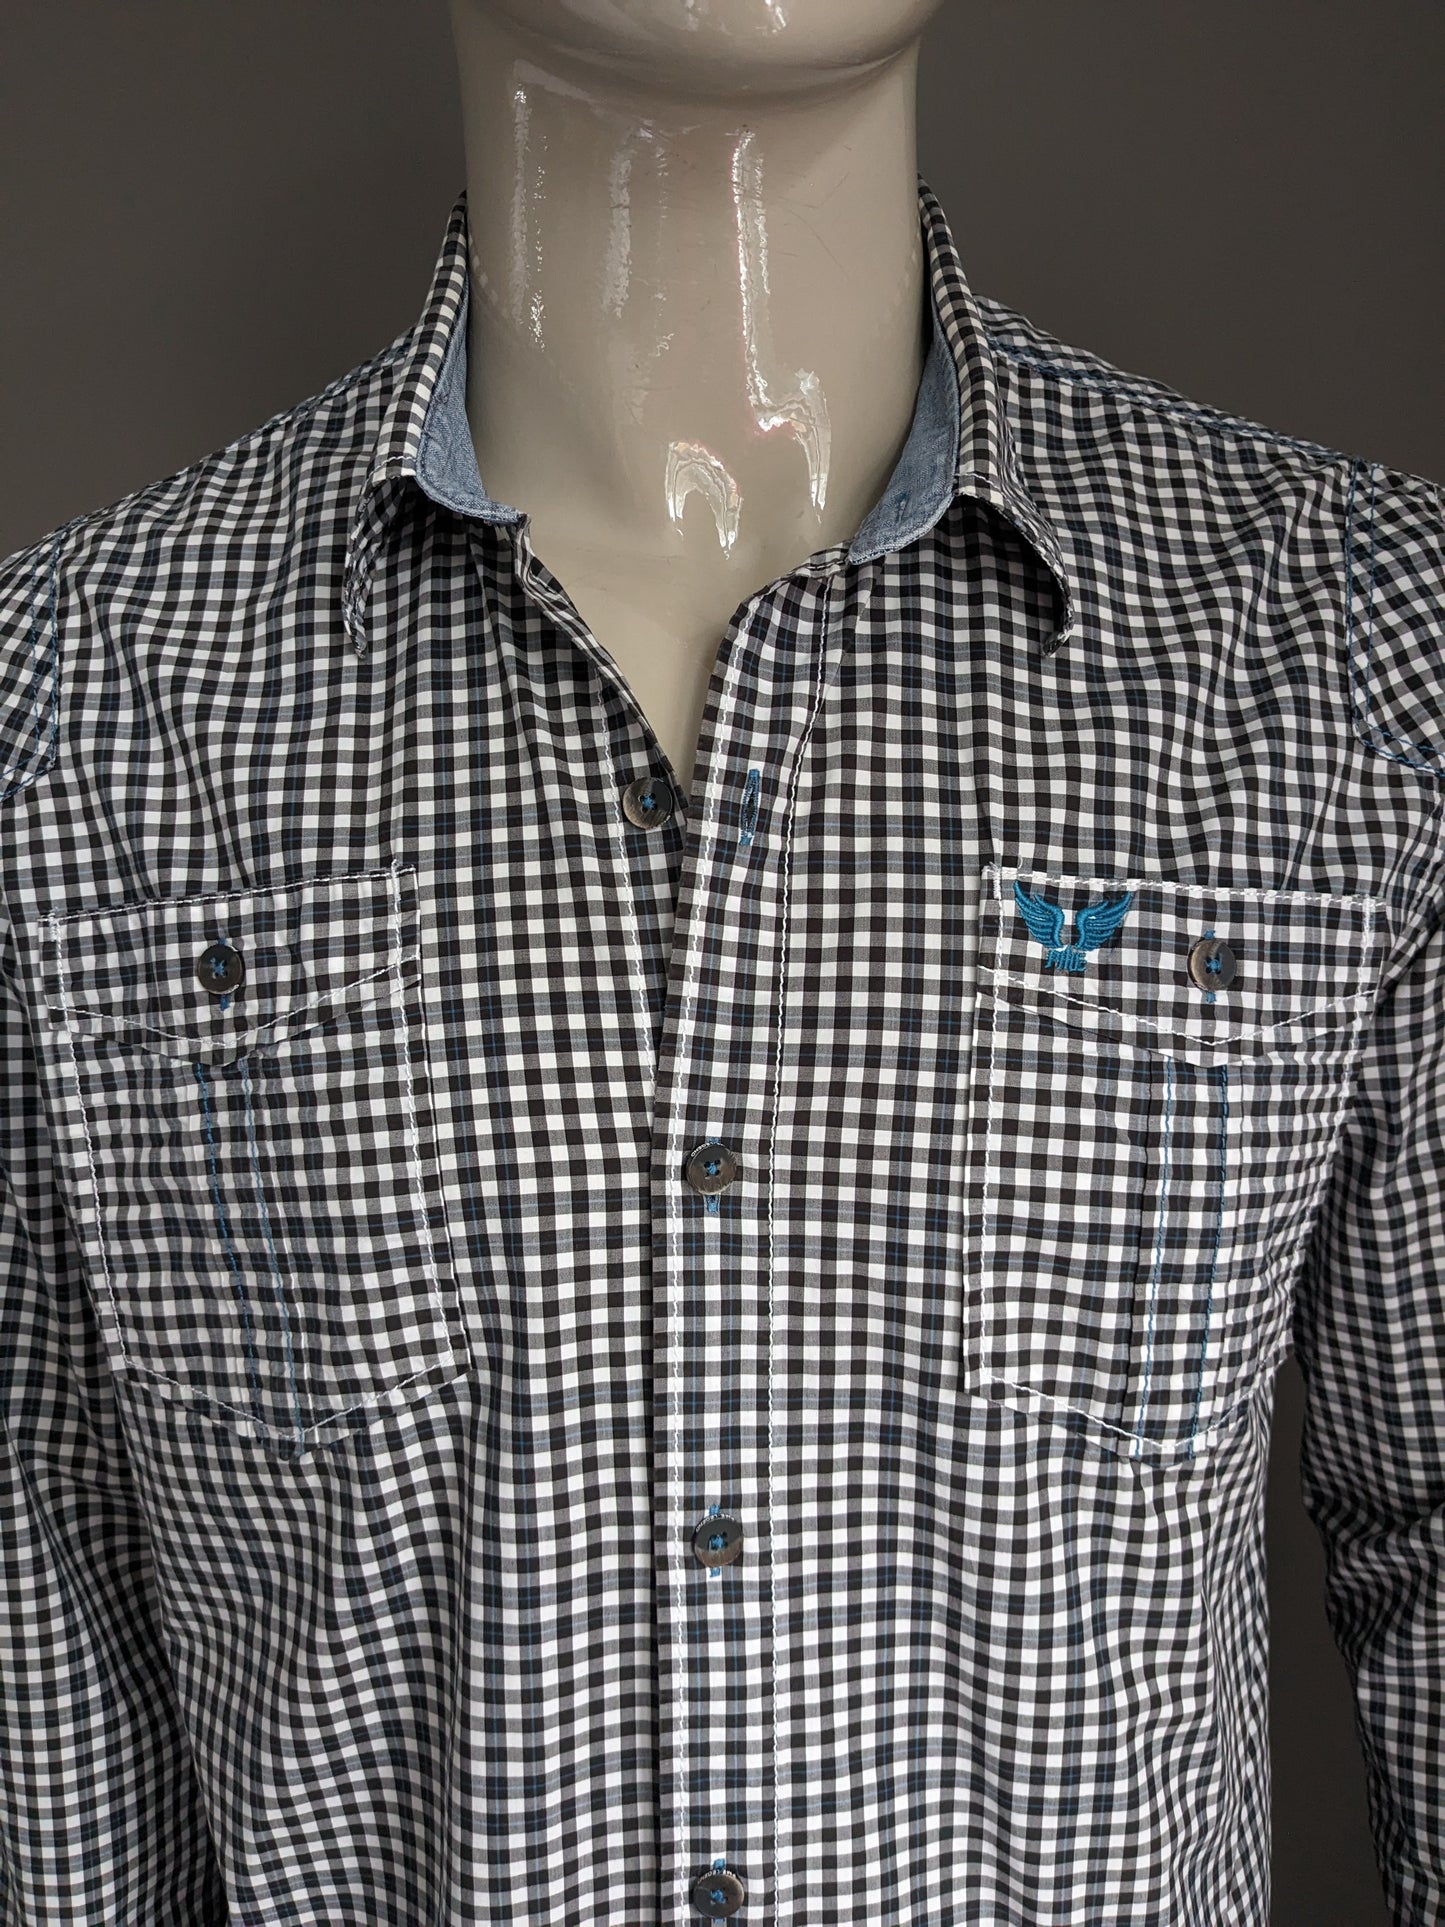 PME Legend overhemd. Zwart Wit geblokt met blauwe lijn en stiksels. Maat XL.